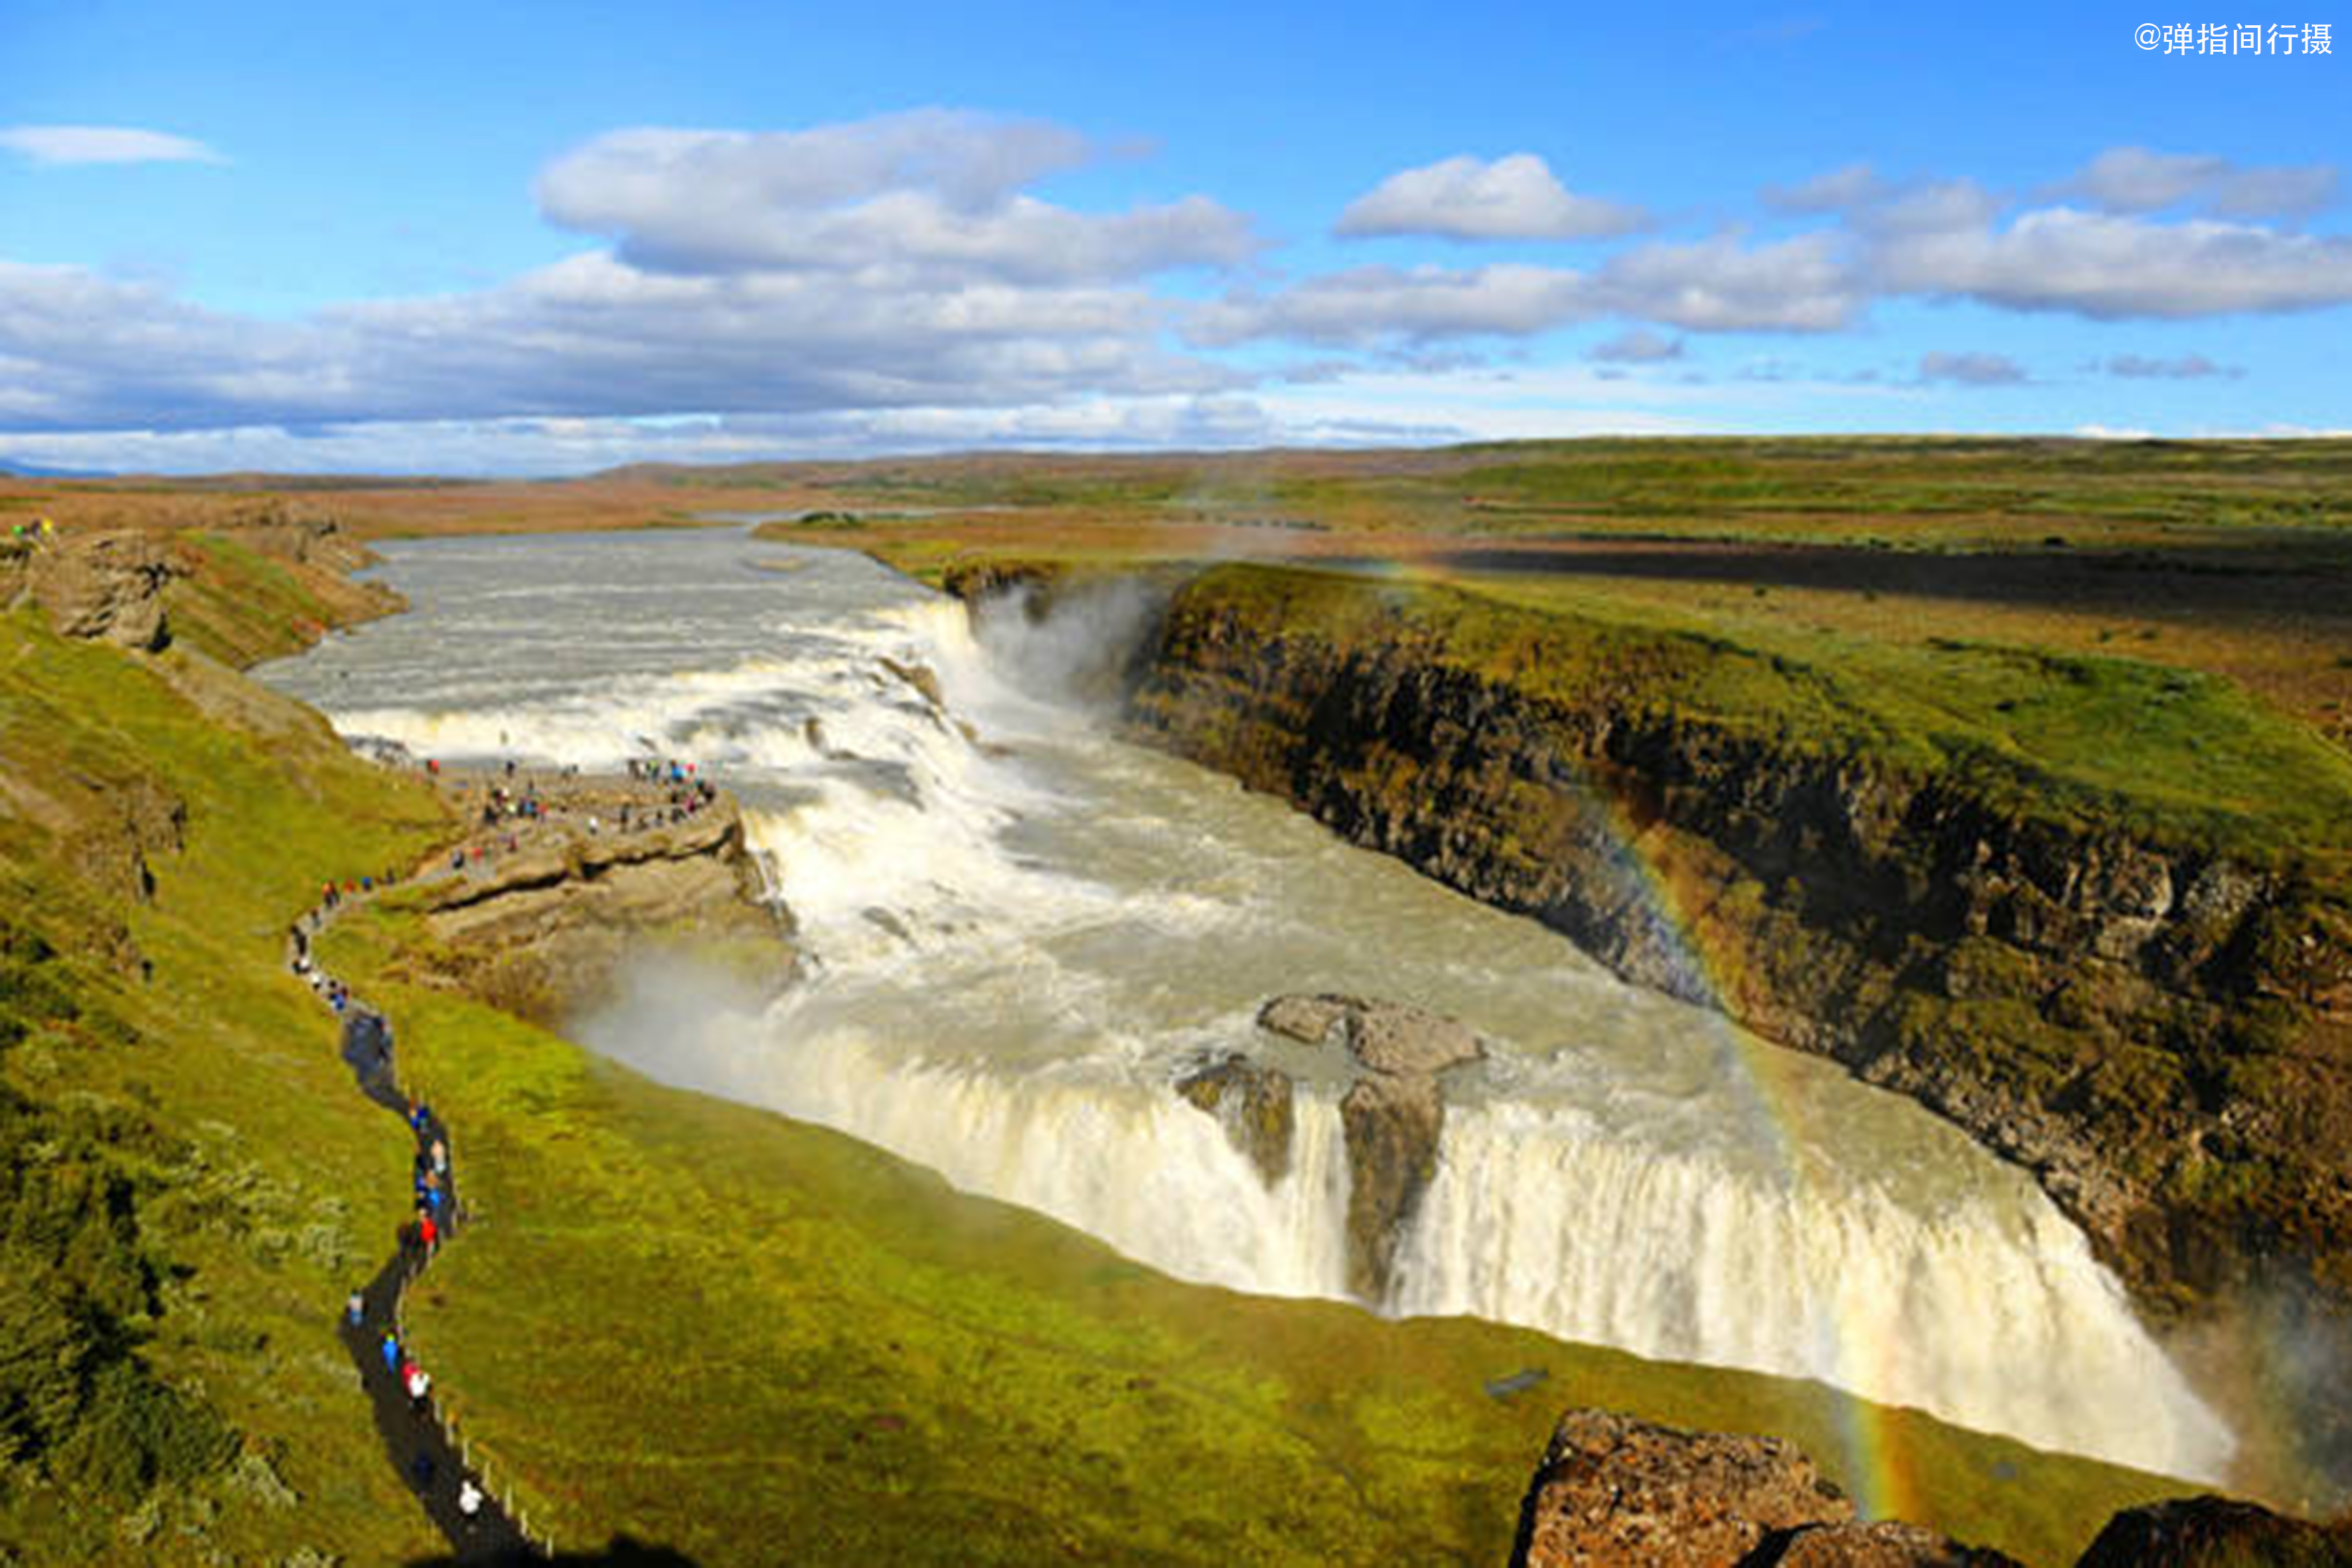 标志冰岛 库存图片. 图片 包括有 冰岛, 有风, 红色, 空白, 标志, 状态, 蓝色 - 66290575